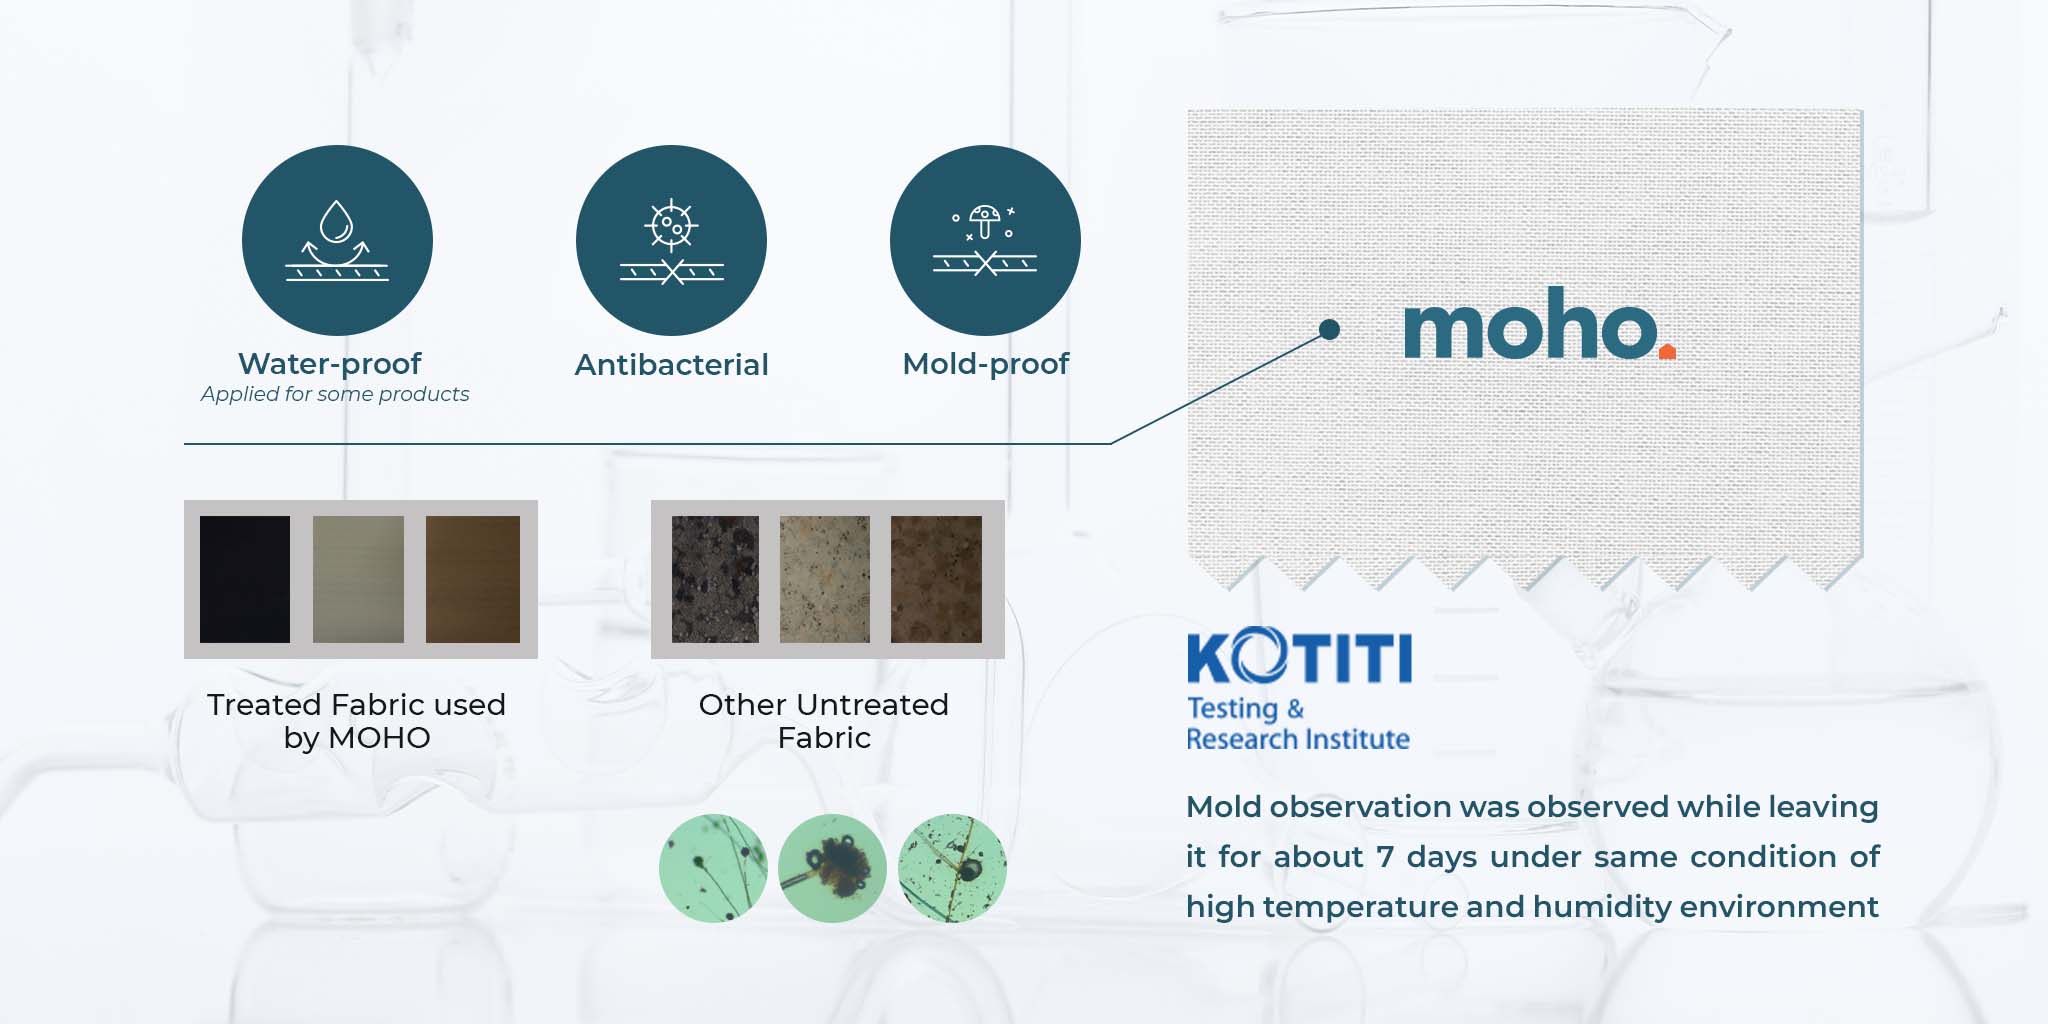 moho-furniture-kotiti-test